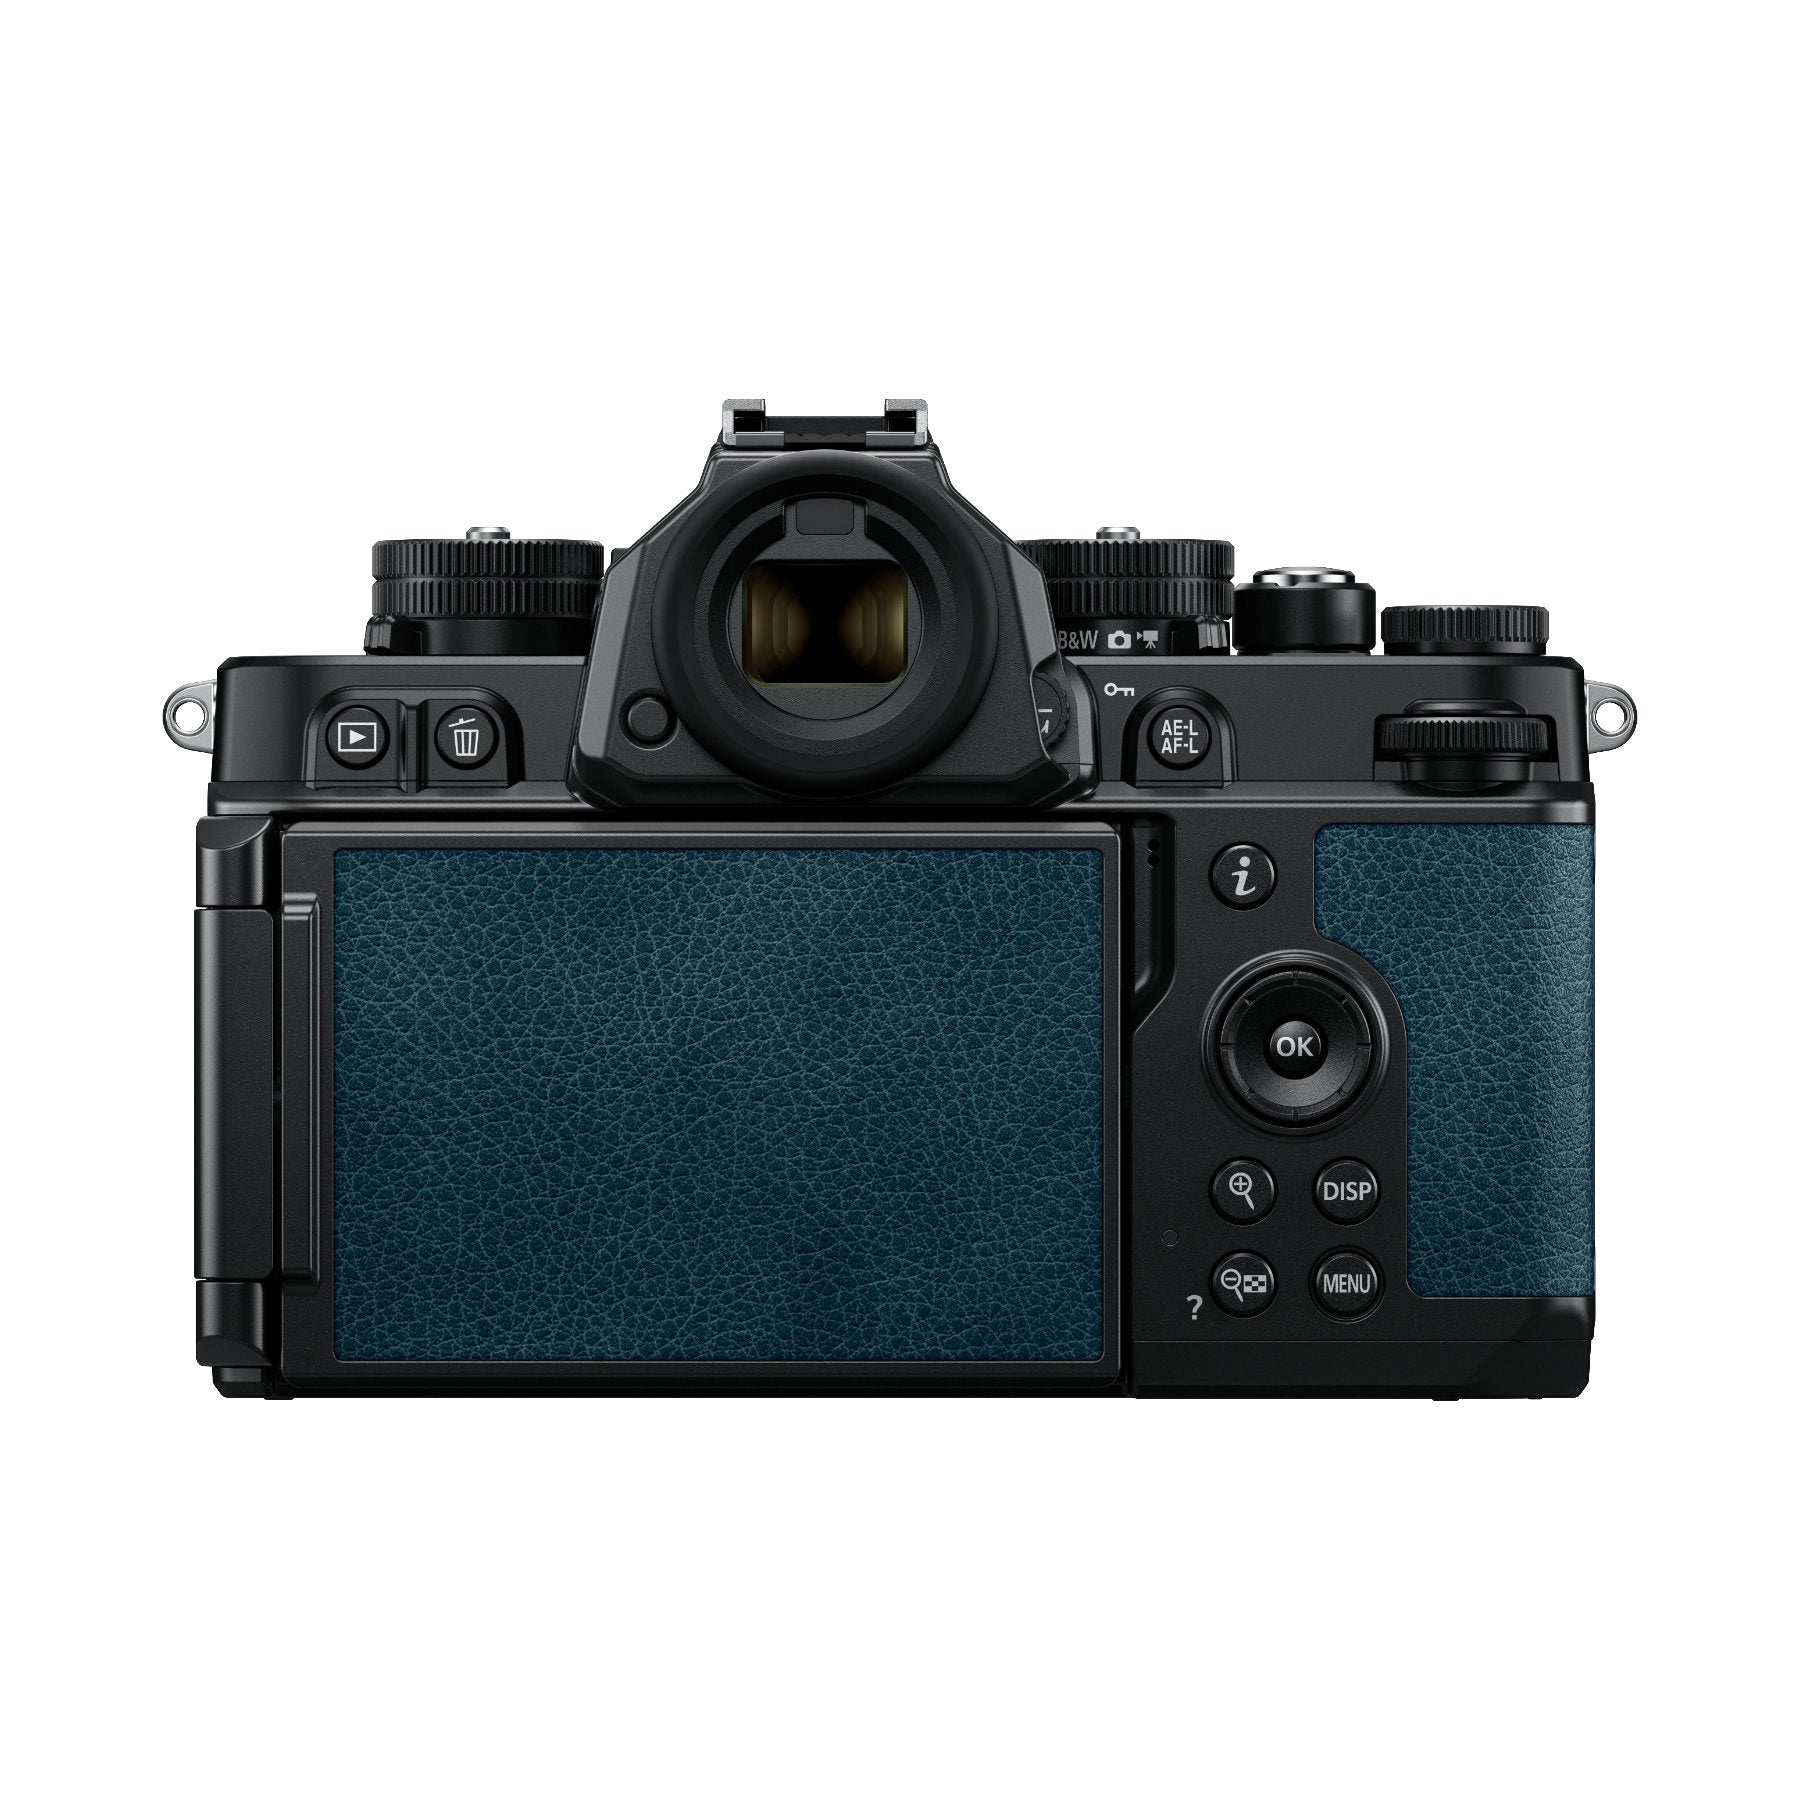 Nikon Zf ボディ - デジタルカメラ